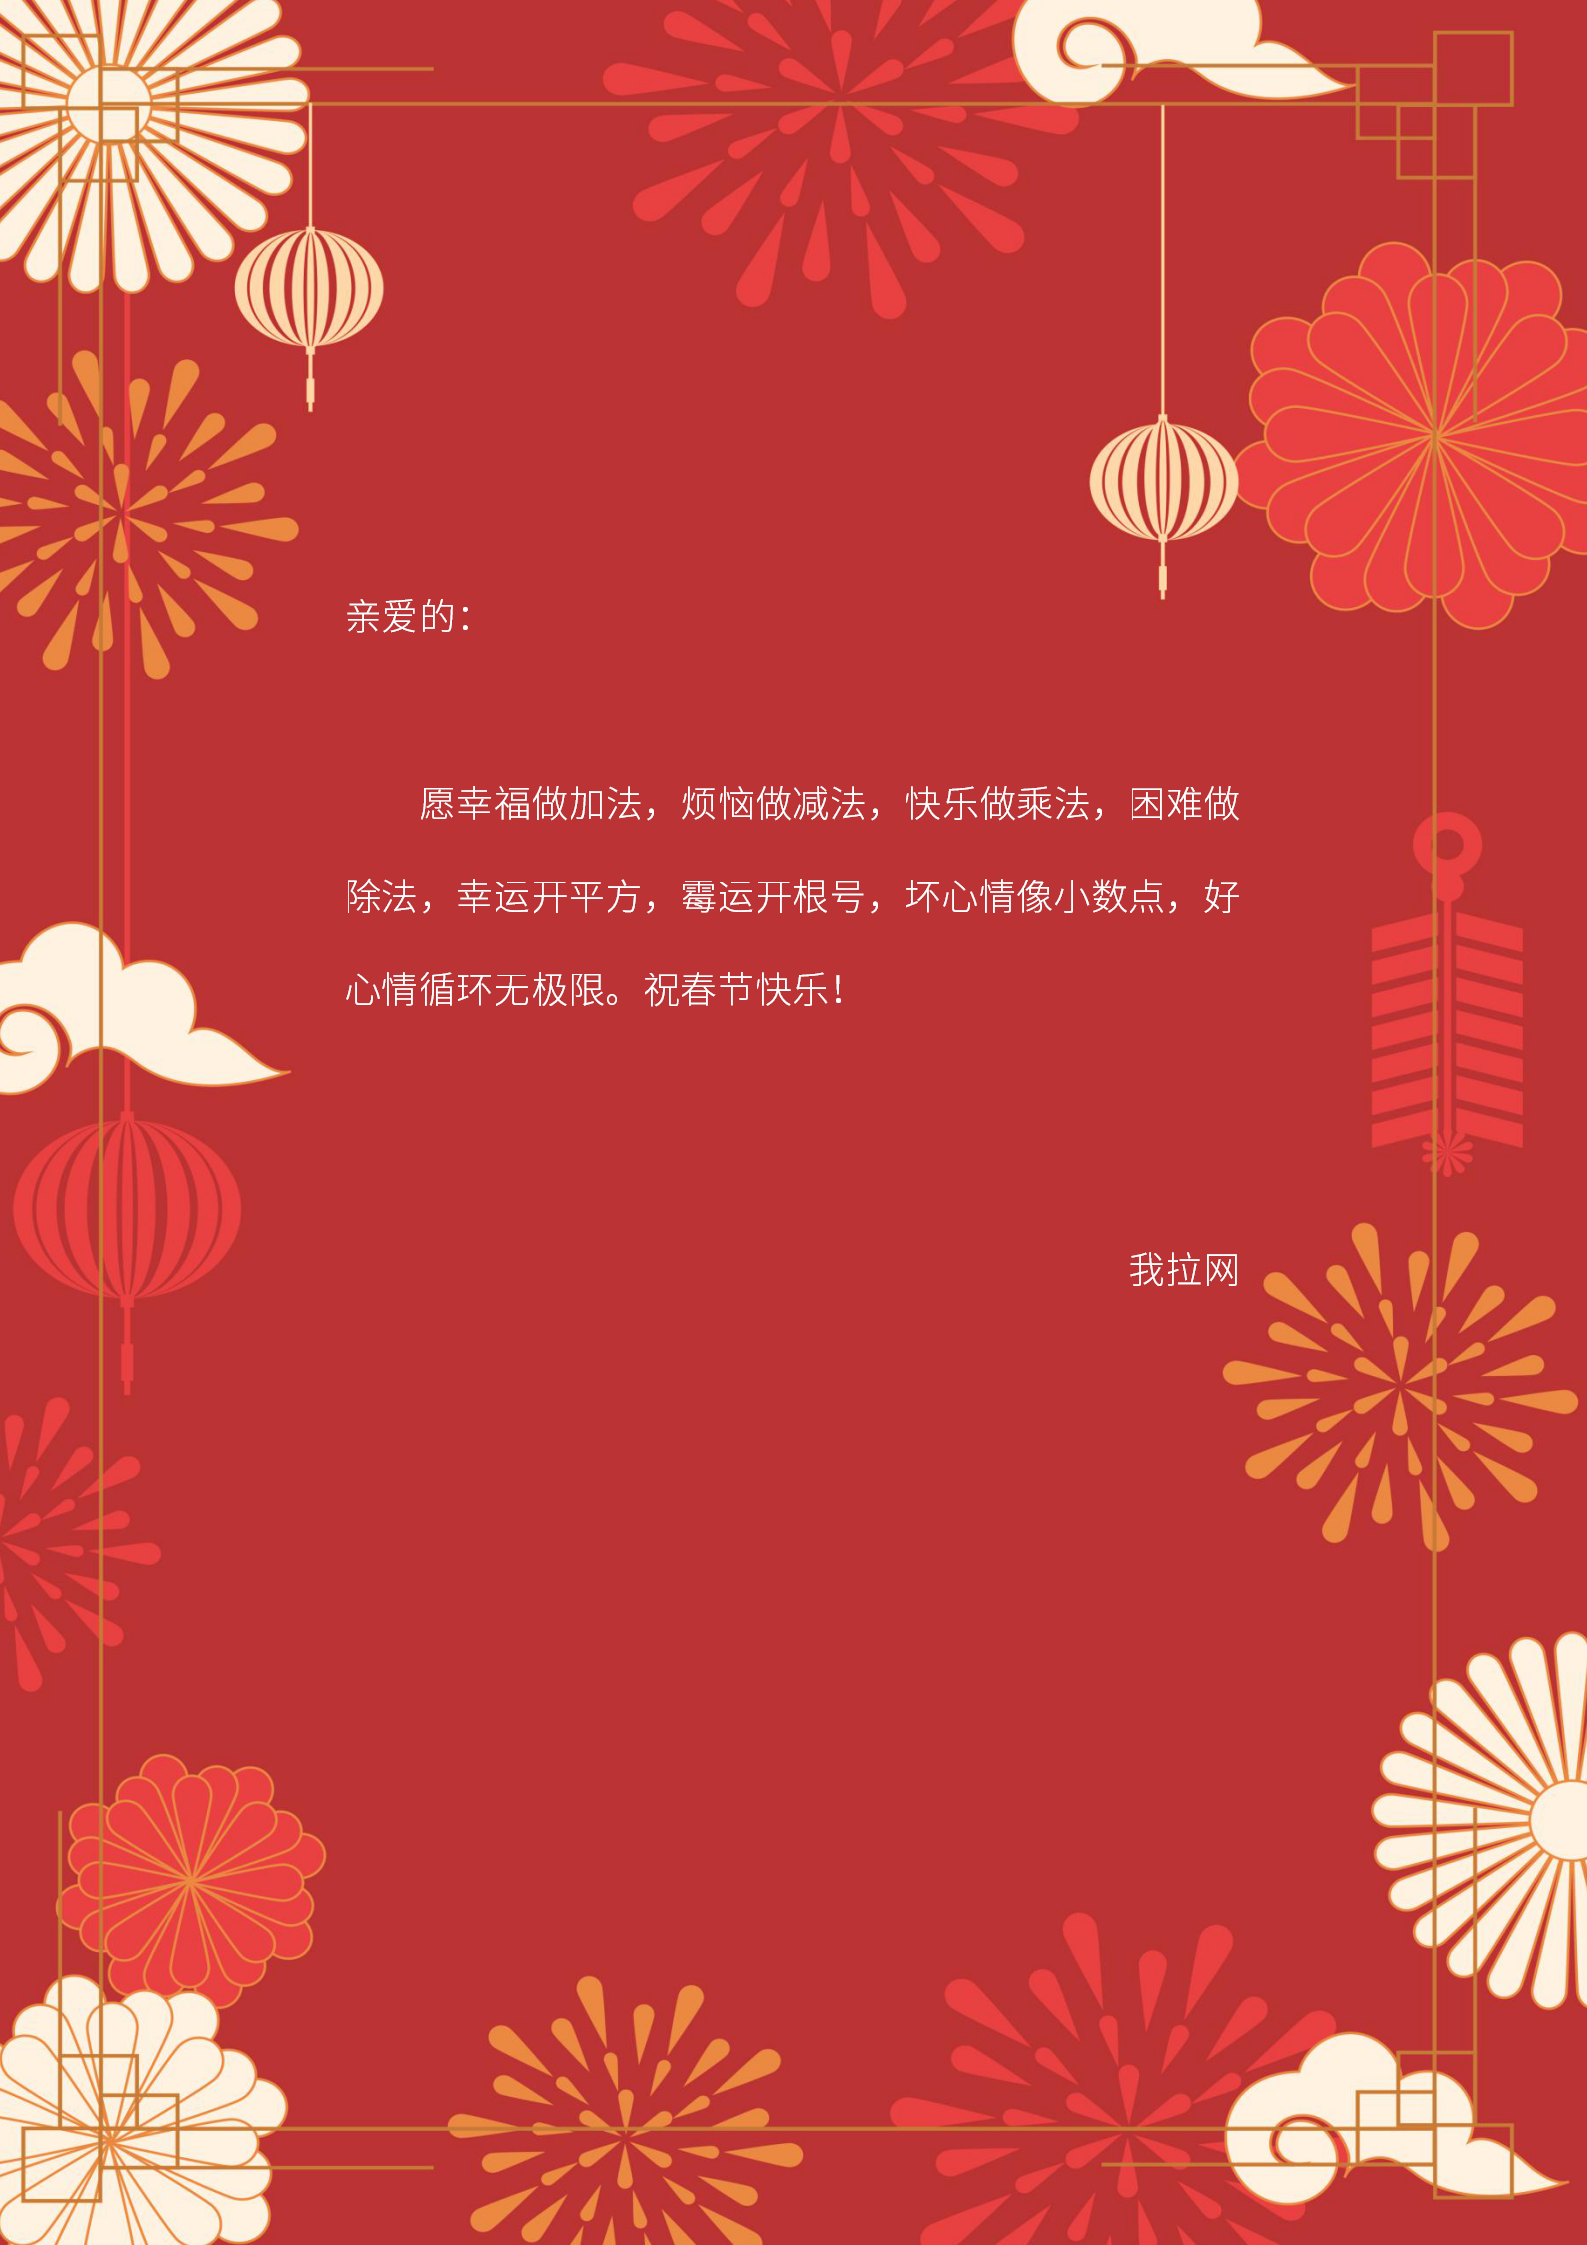 红白色灯笼元宵节祝福照片元宵节分享中文贺卡 - 模板 - Canva可画